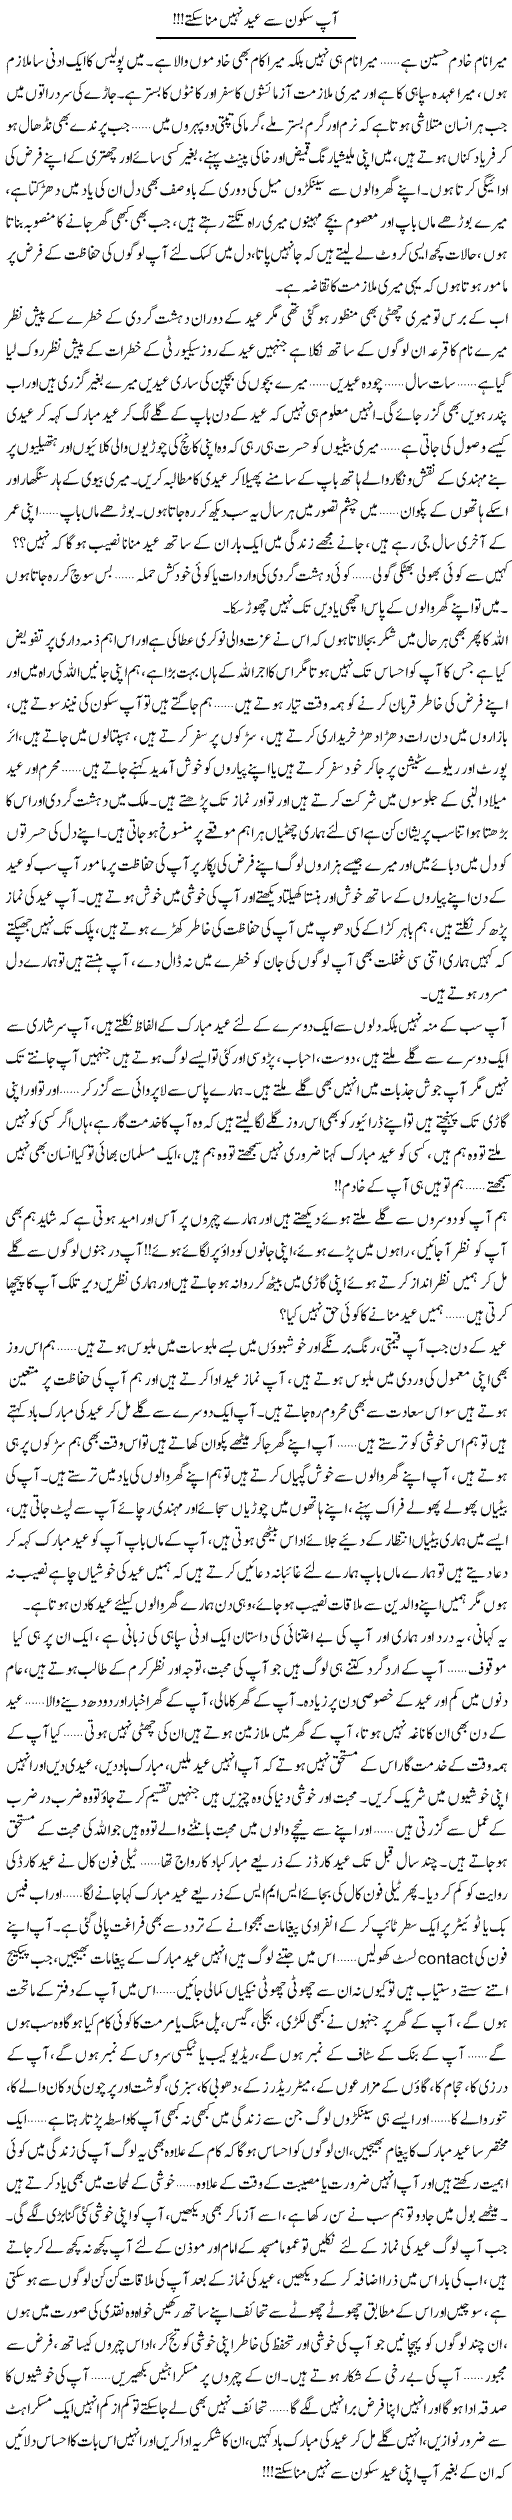 Aap Sakoon Ki Eid Nahi Mana Sakte!!! | Shereen Haider | Daily Urdu Columns